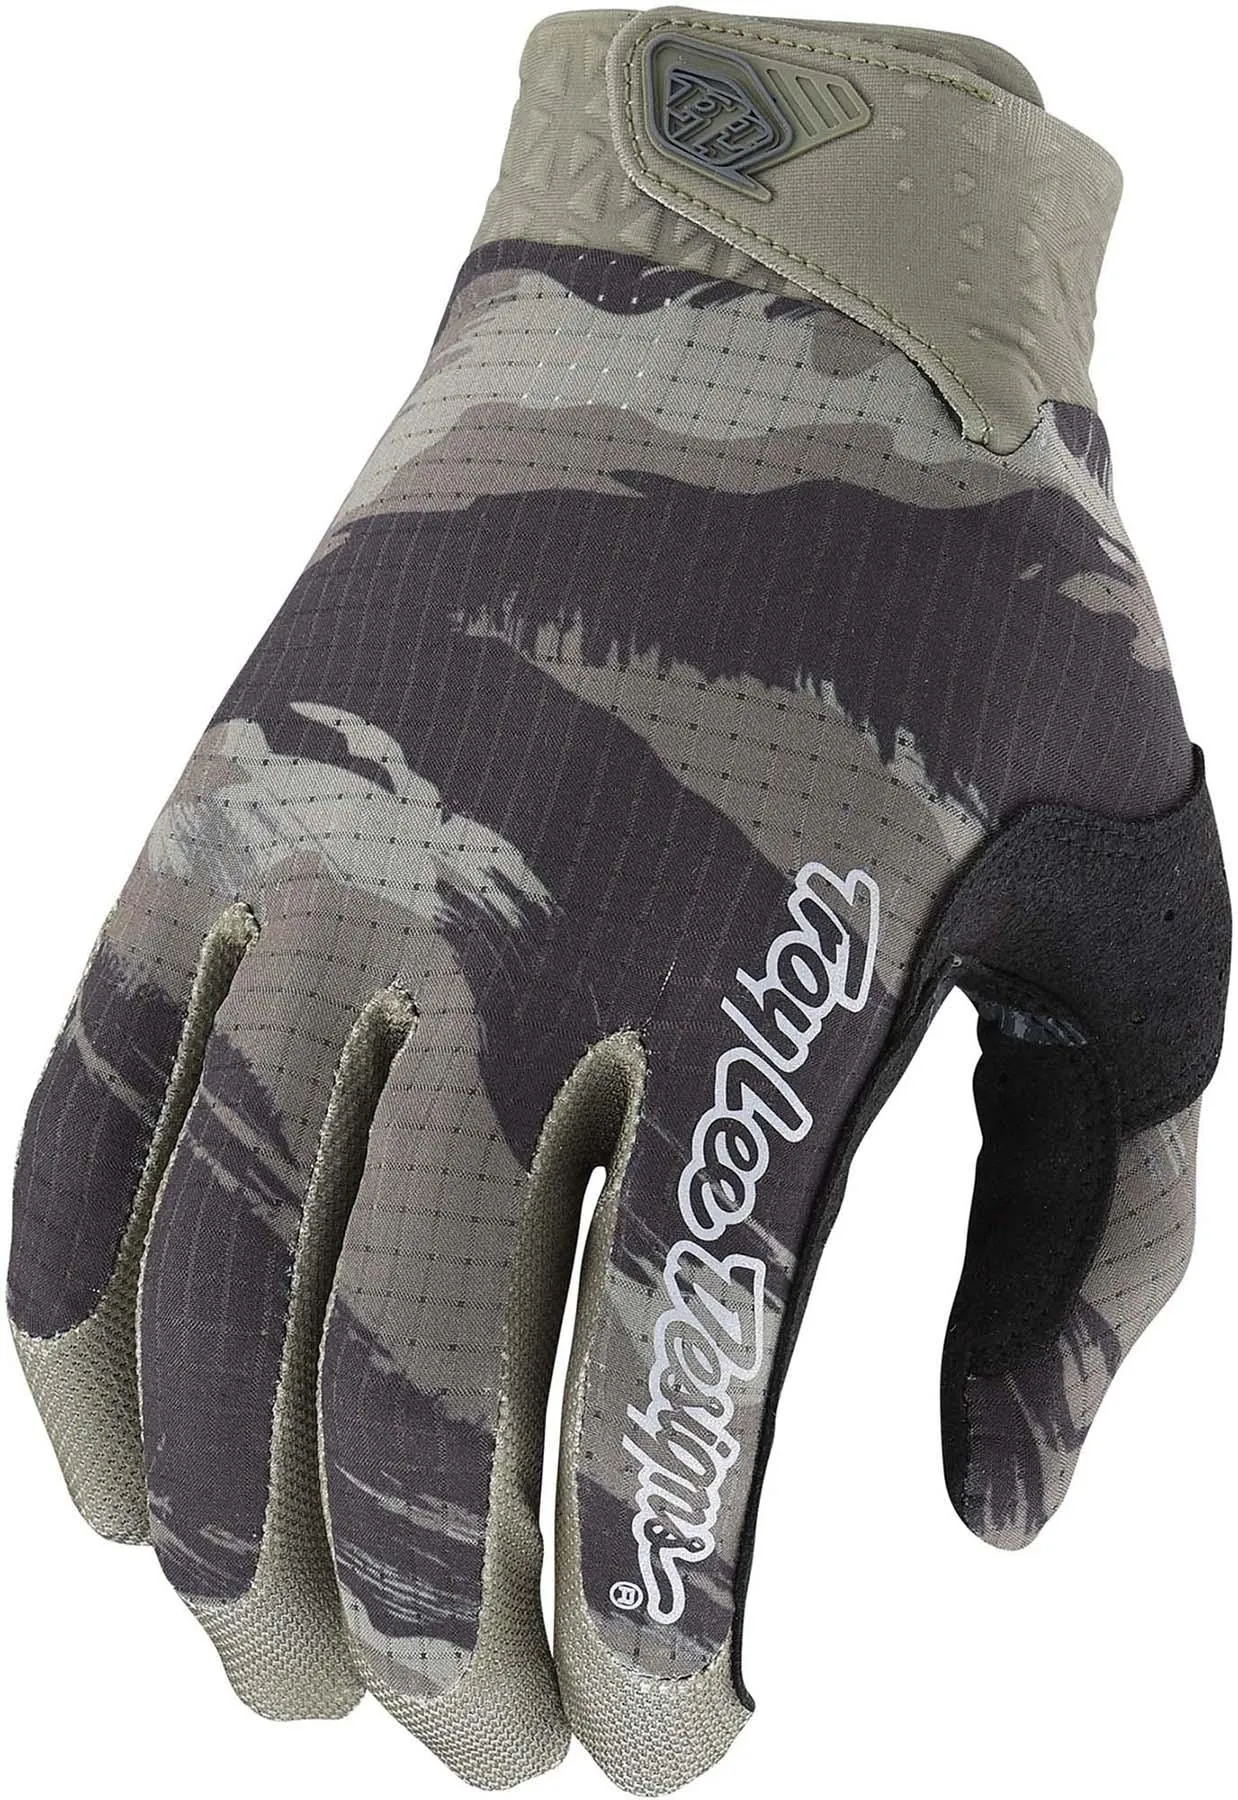  Camo Air Gloves, Army Green